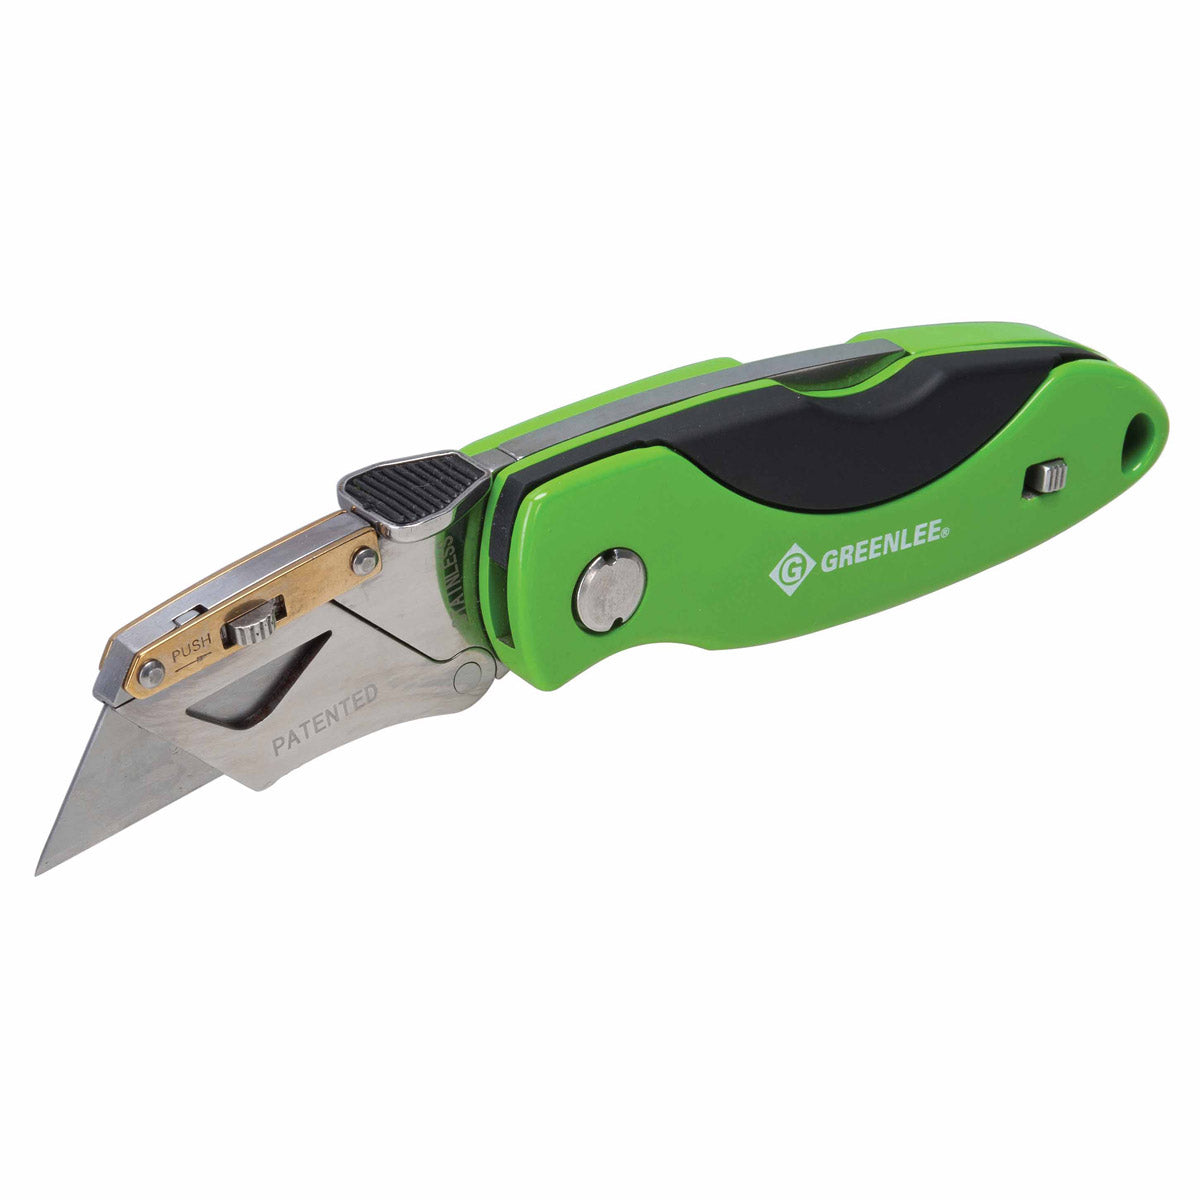 Greenlee 0652-23 Heavy Duty Folding Utility Knife